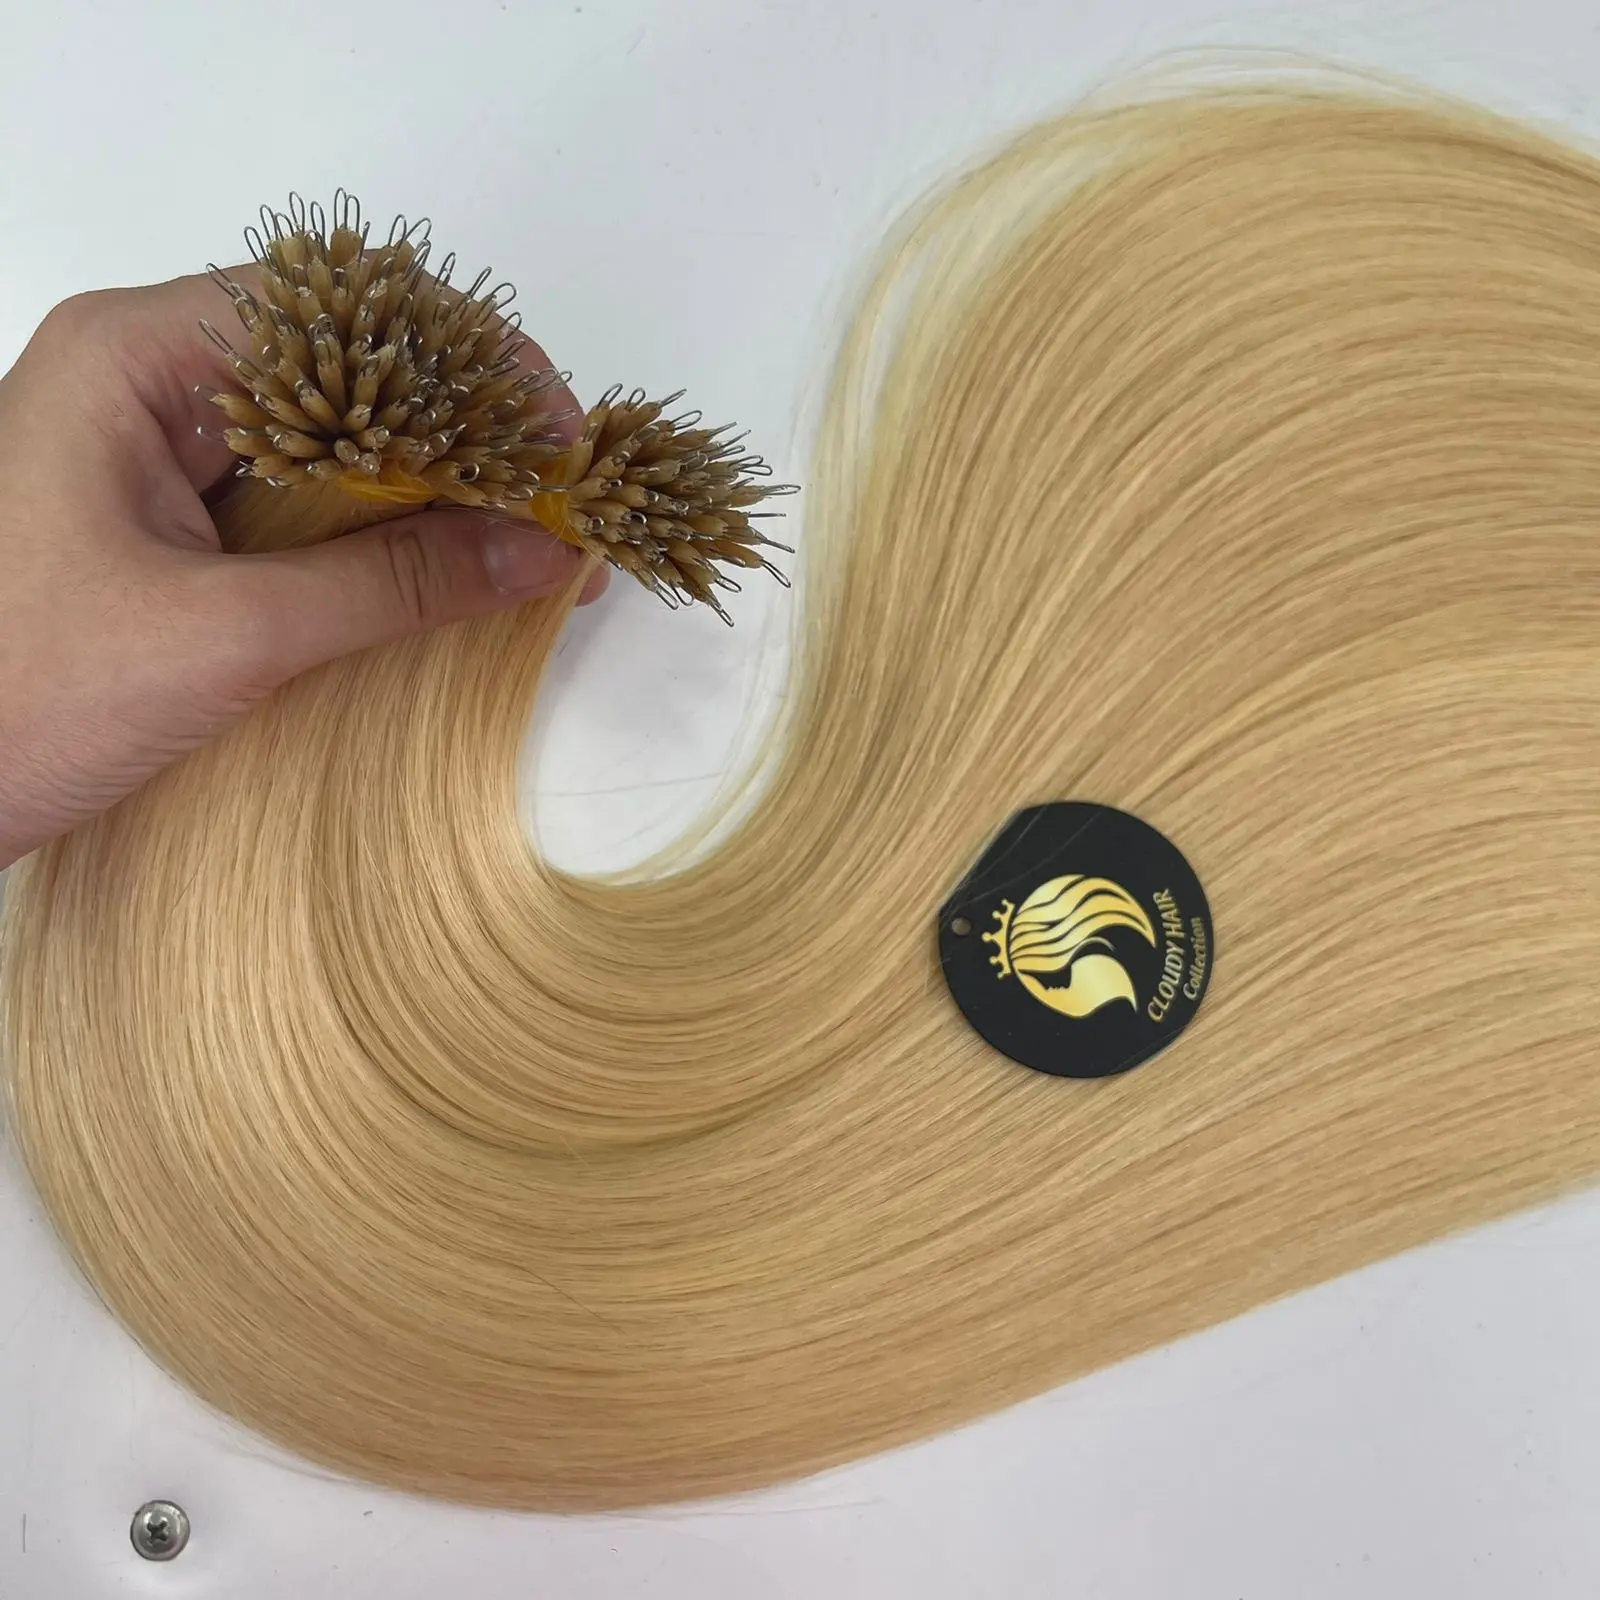 Grosir ekstensi rambut dari cincin Nano Remy Vietnam manik-manik kecil rambut Remy buatan tangan dengan cincin Nano